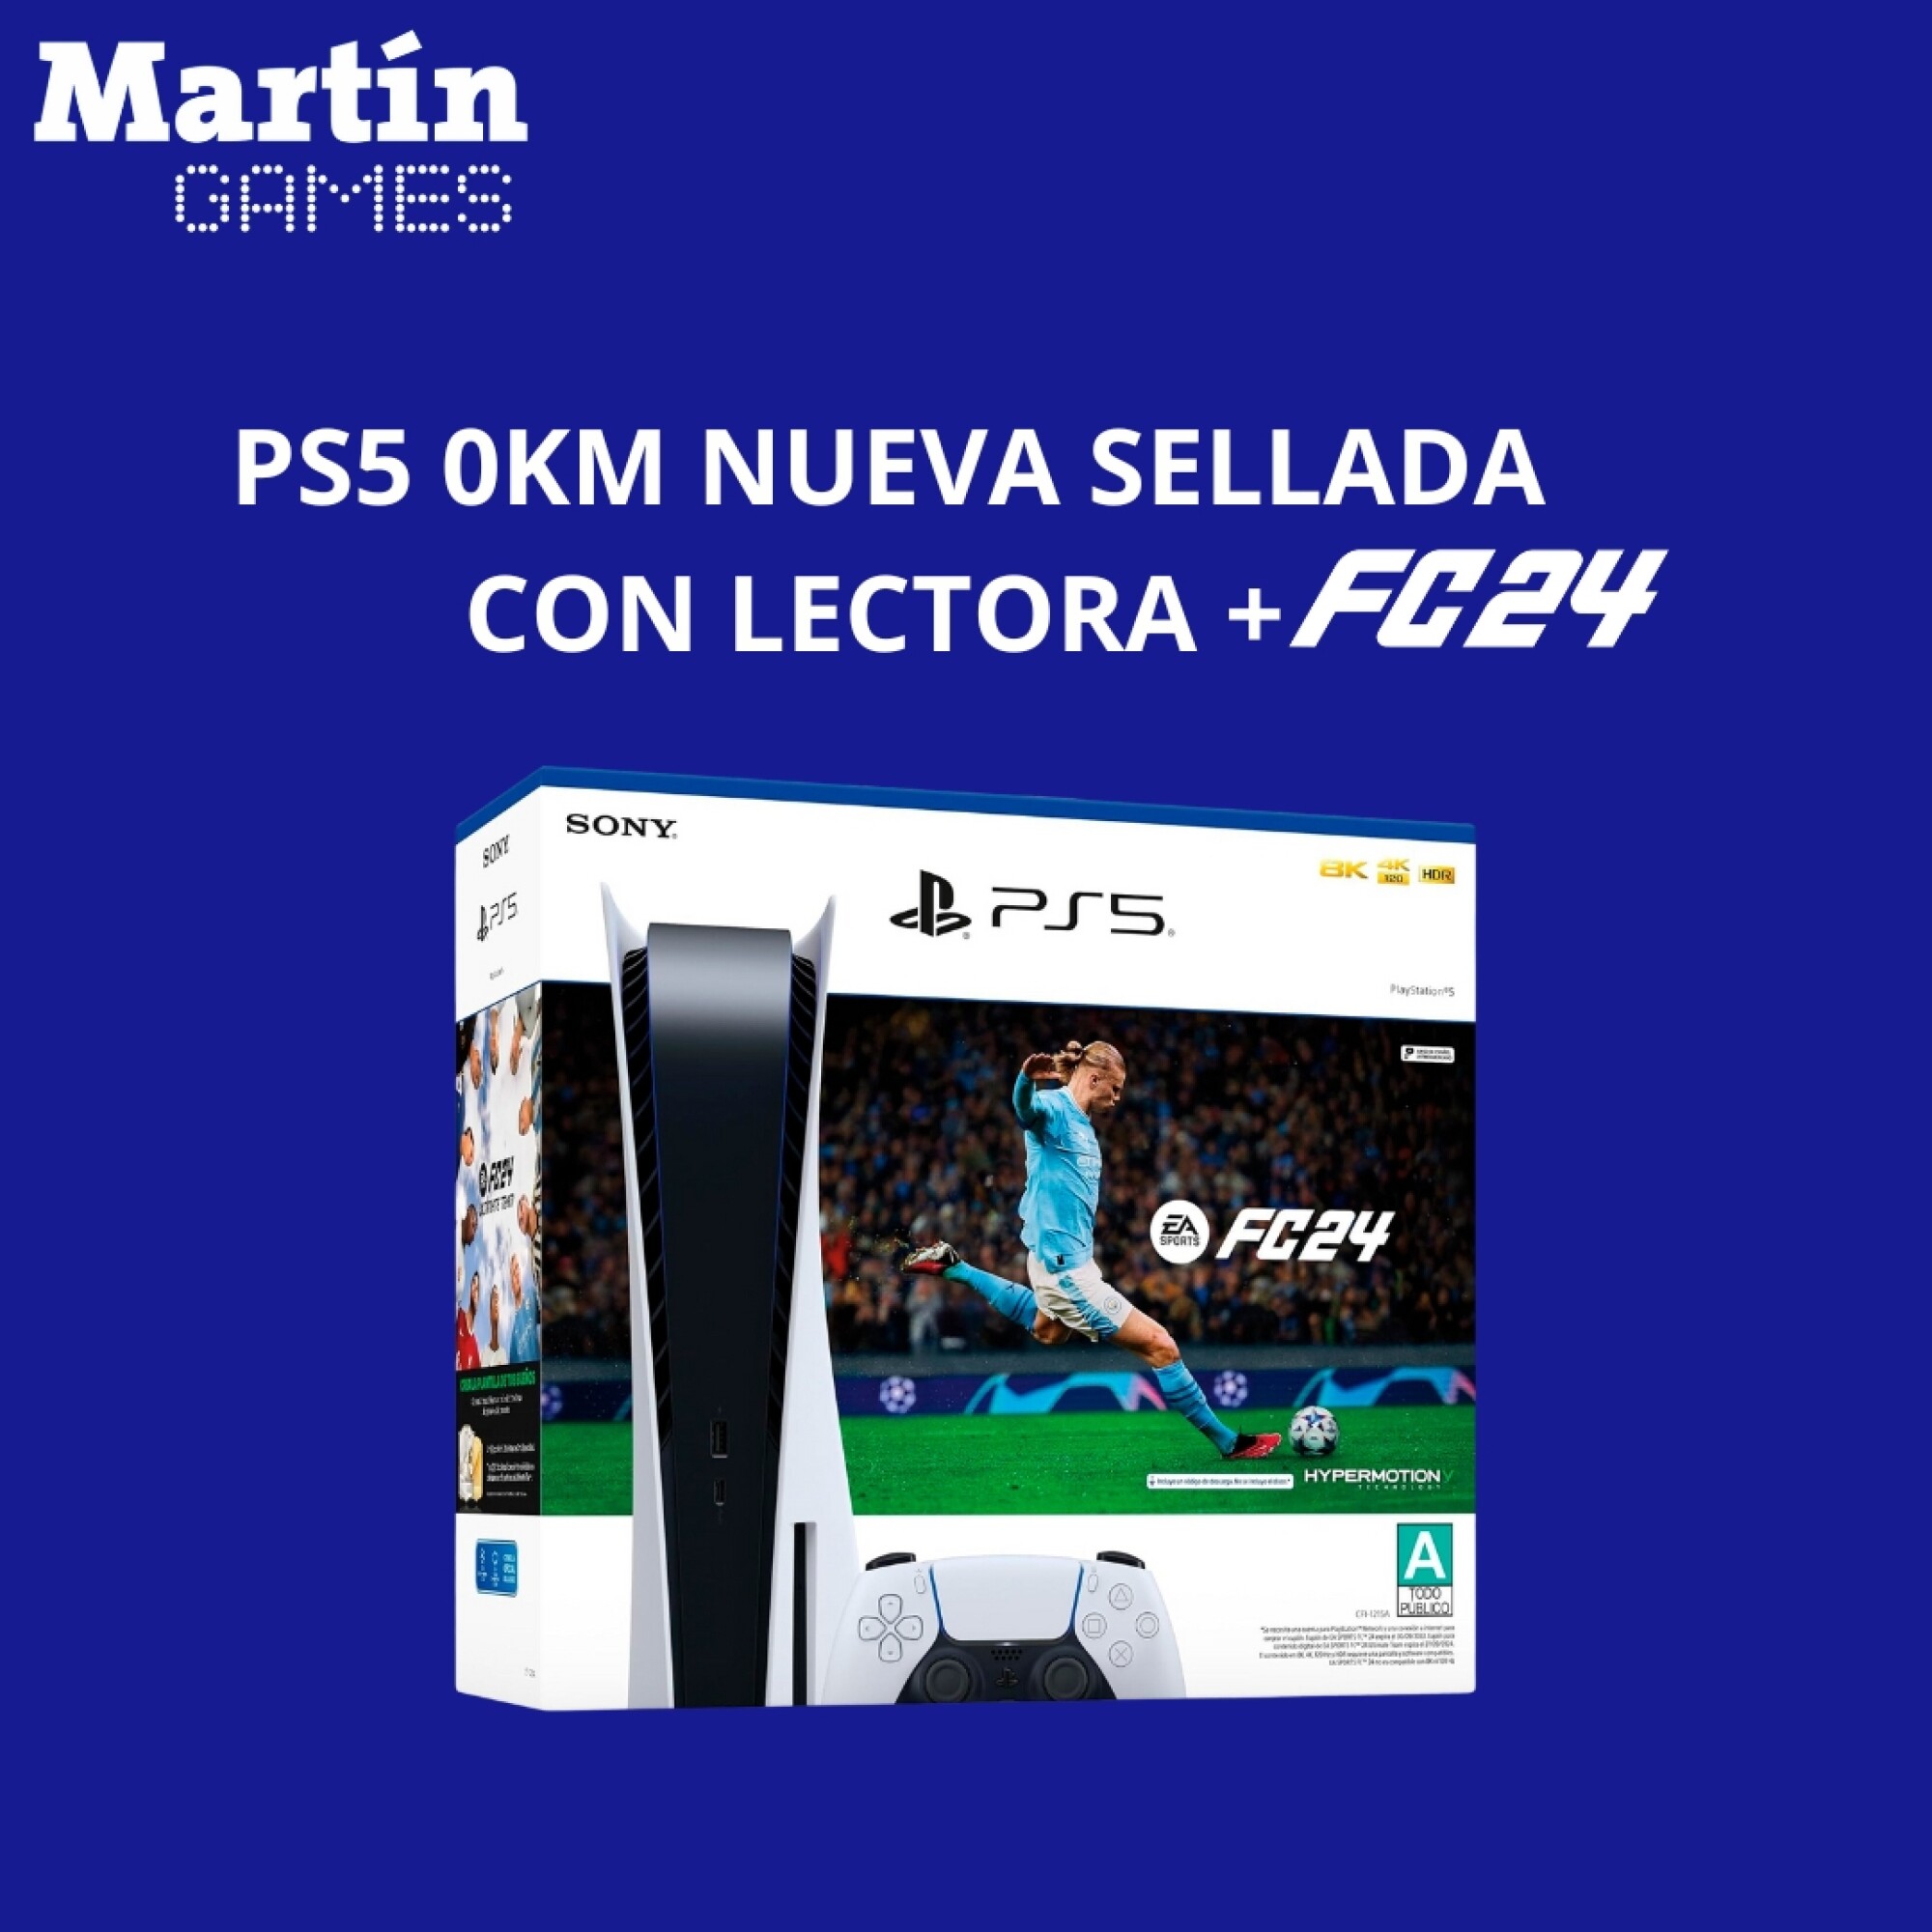 PS5 OKM NUEVA SELLADA CON LECTORA + FC24 — Martín Games